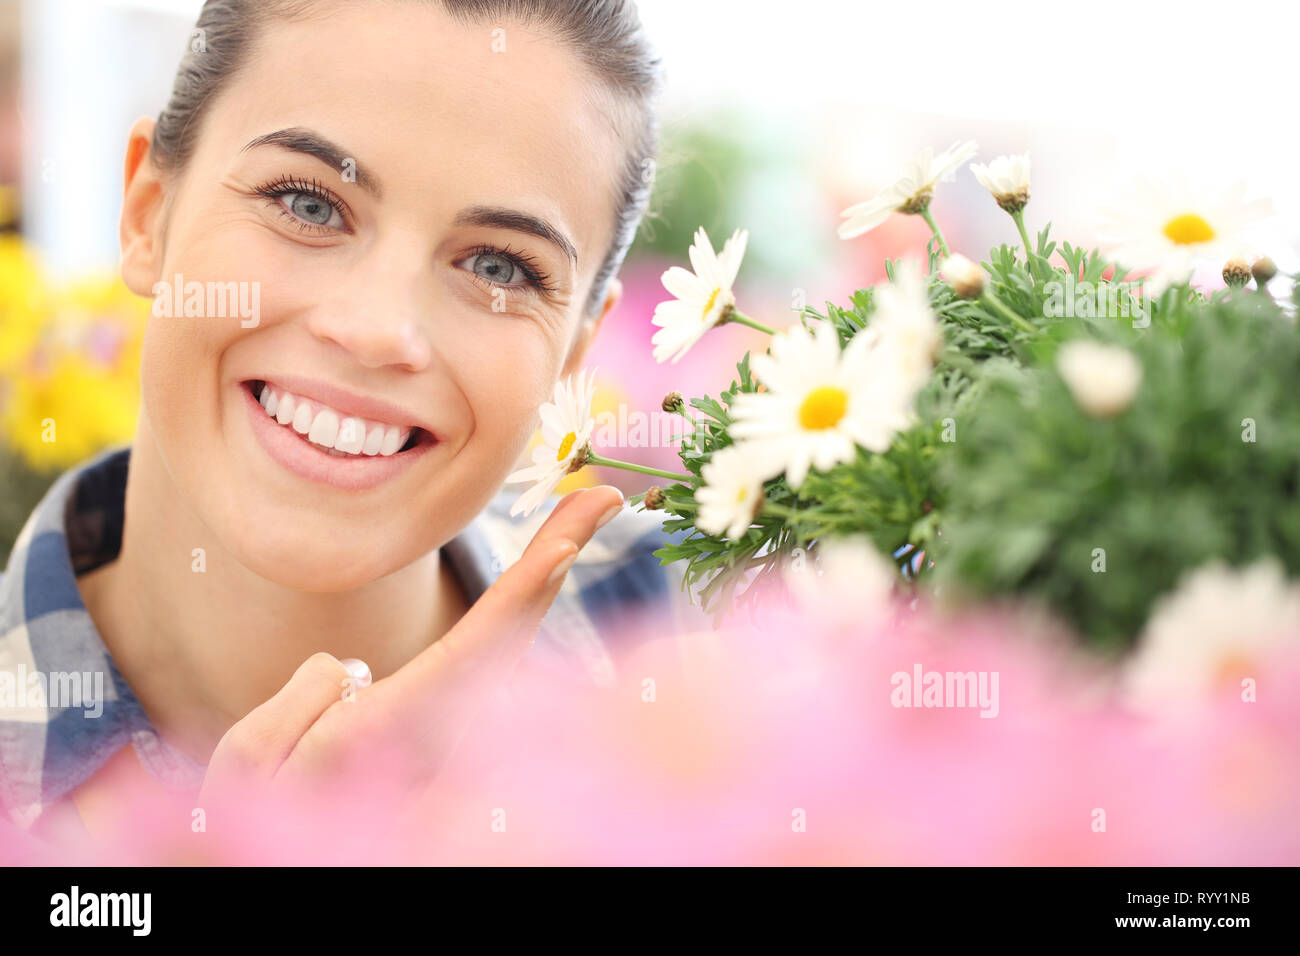 Concetto di primavera, donna sorridente nel giardino di fiori di margherite Foto Stock